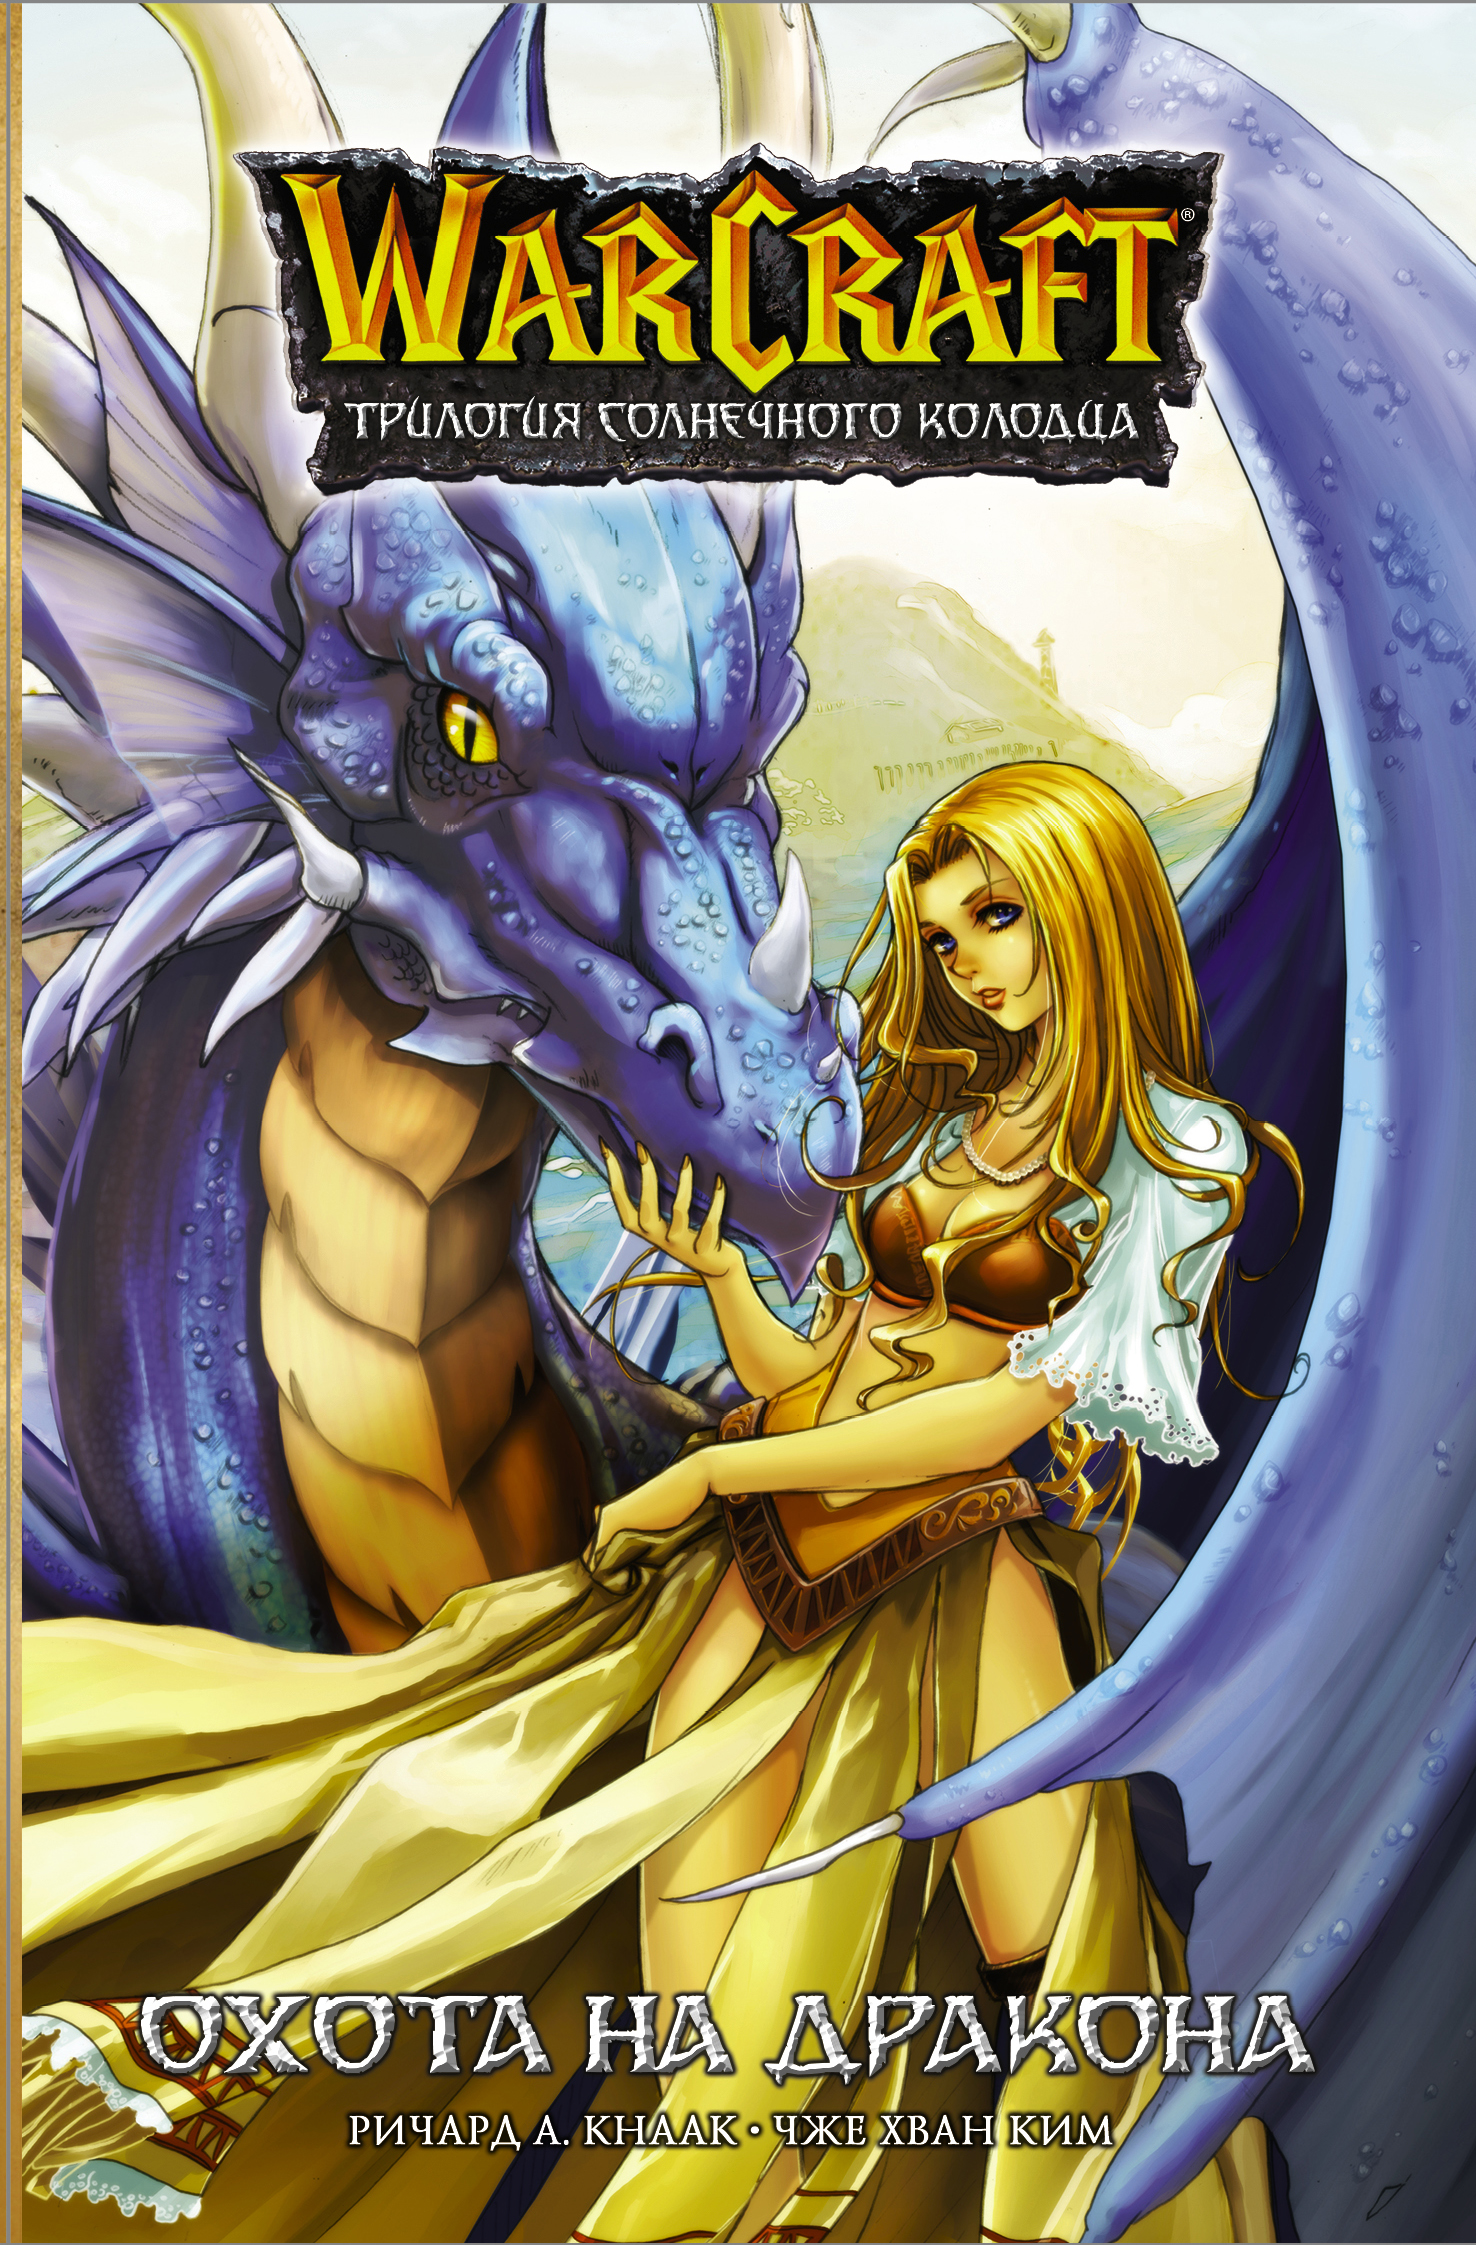 Кнаак Ричард - Warcraft. Трилогия Солнечного колодца: Охота на дракона